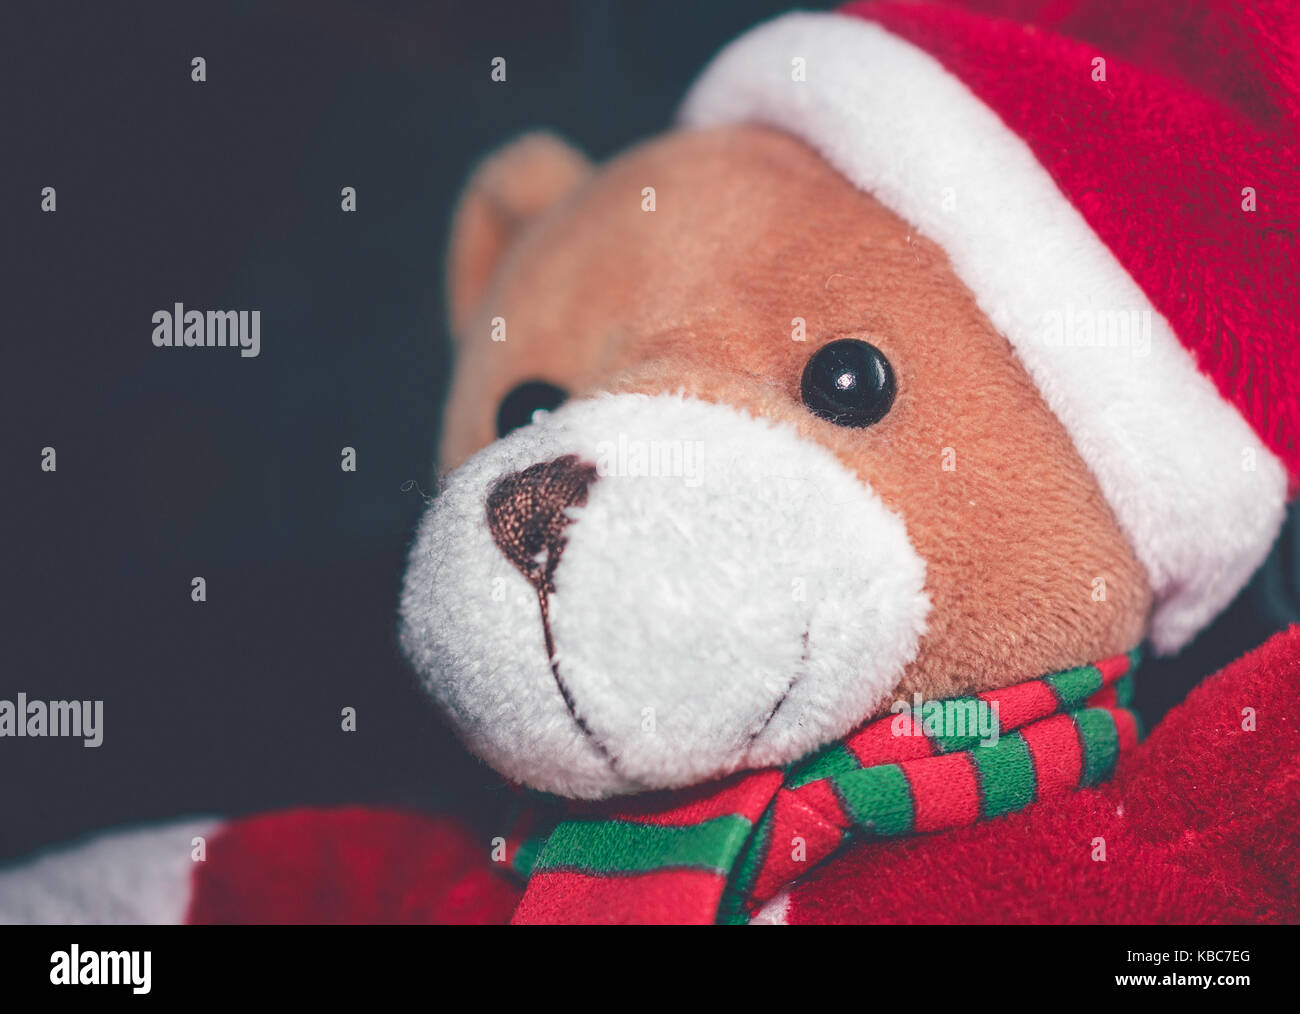 Portrait of cute teddy bear wearing santa claus costume avec écharpe rouge et verte de saison en hiver Banque D'Images